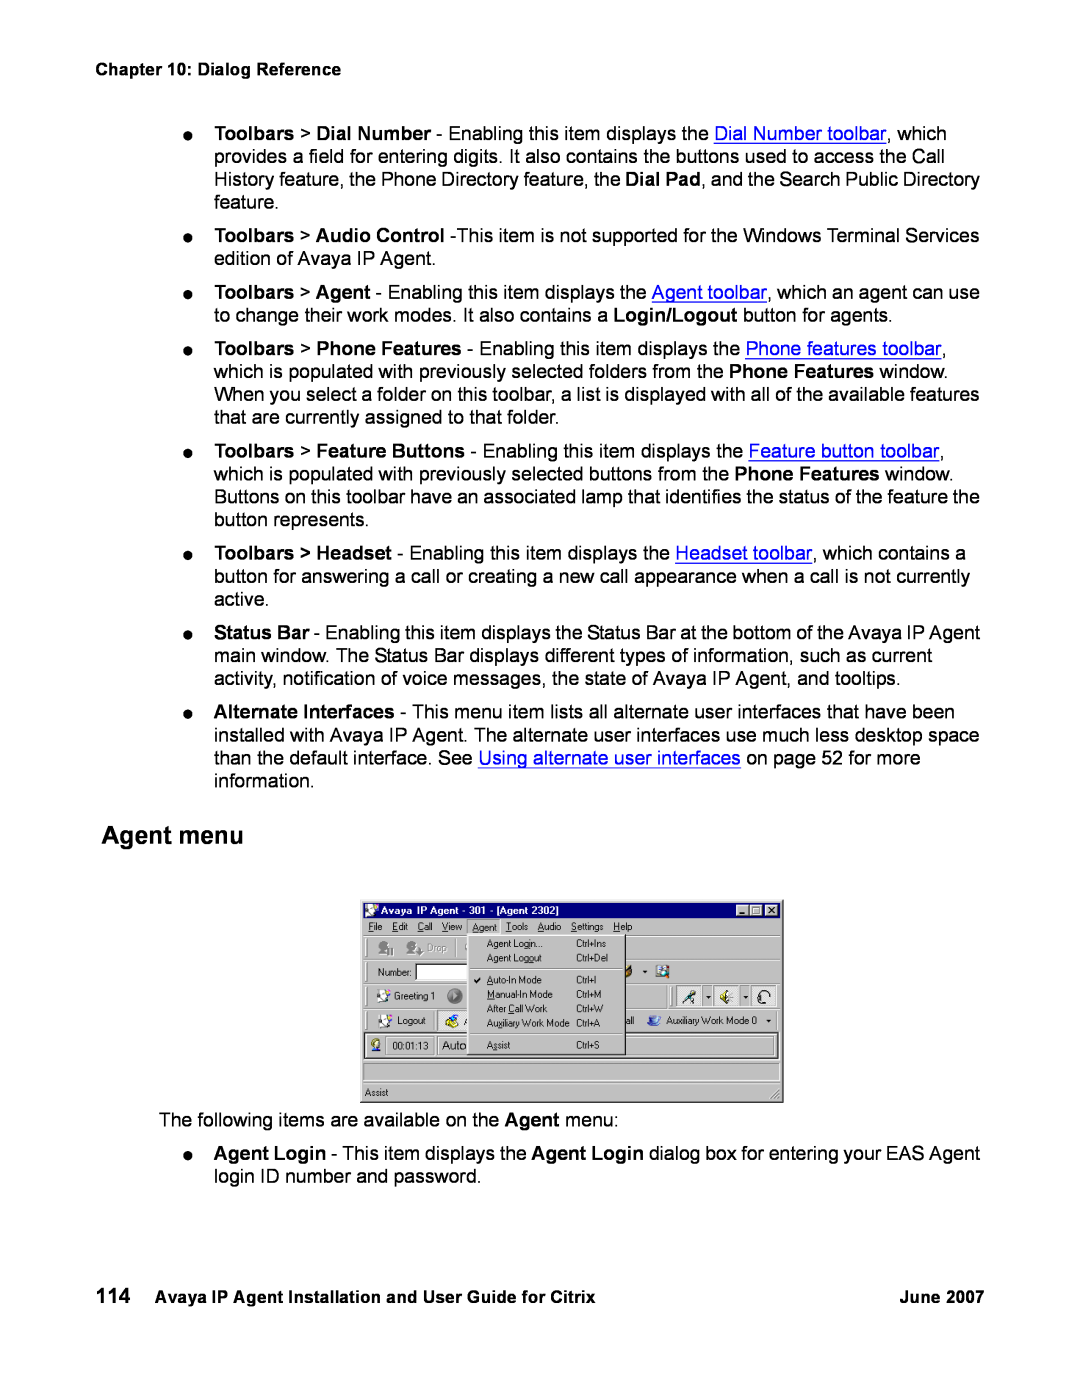 Avaya 7 manual Agent menu 